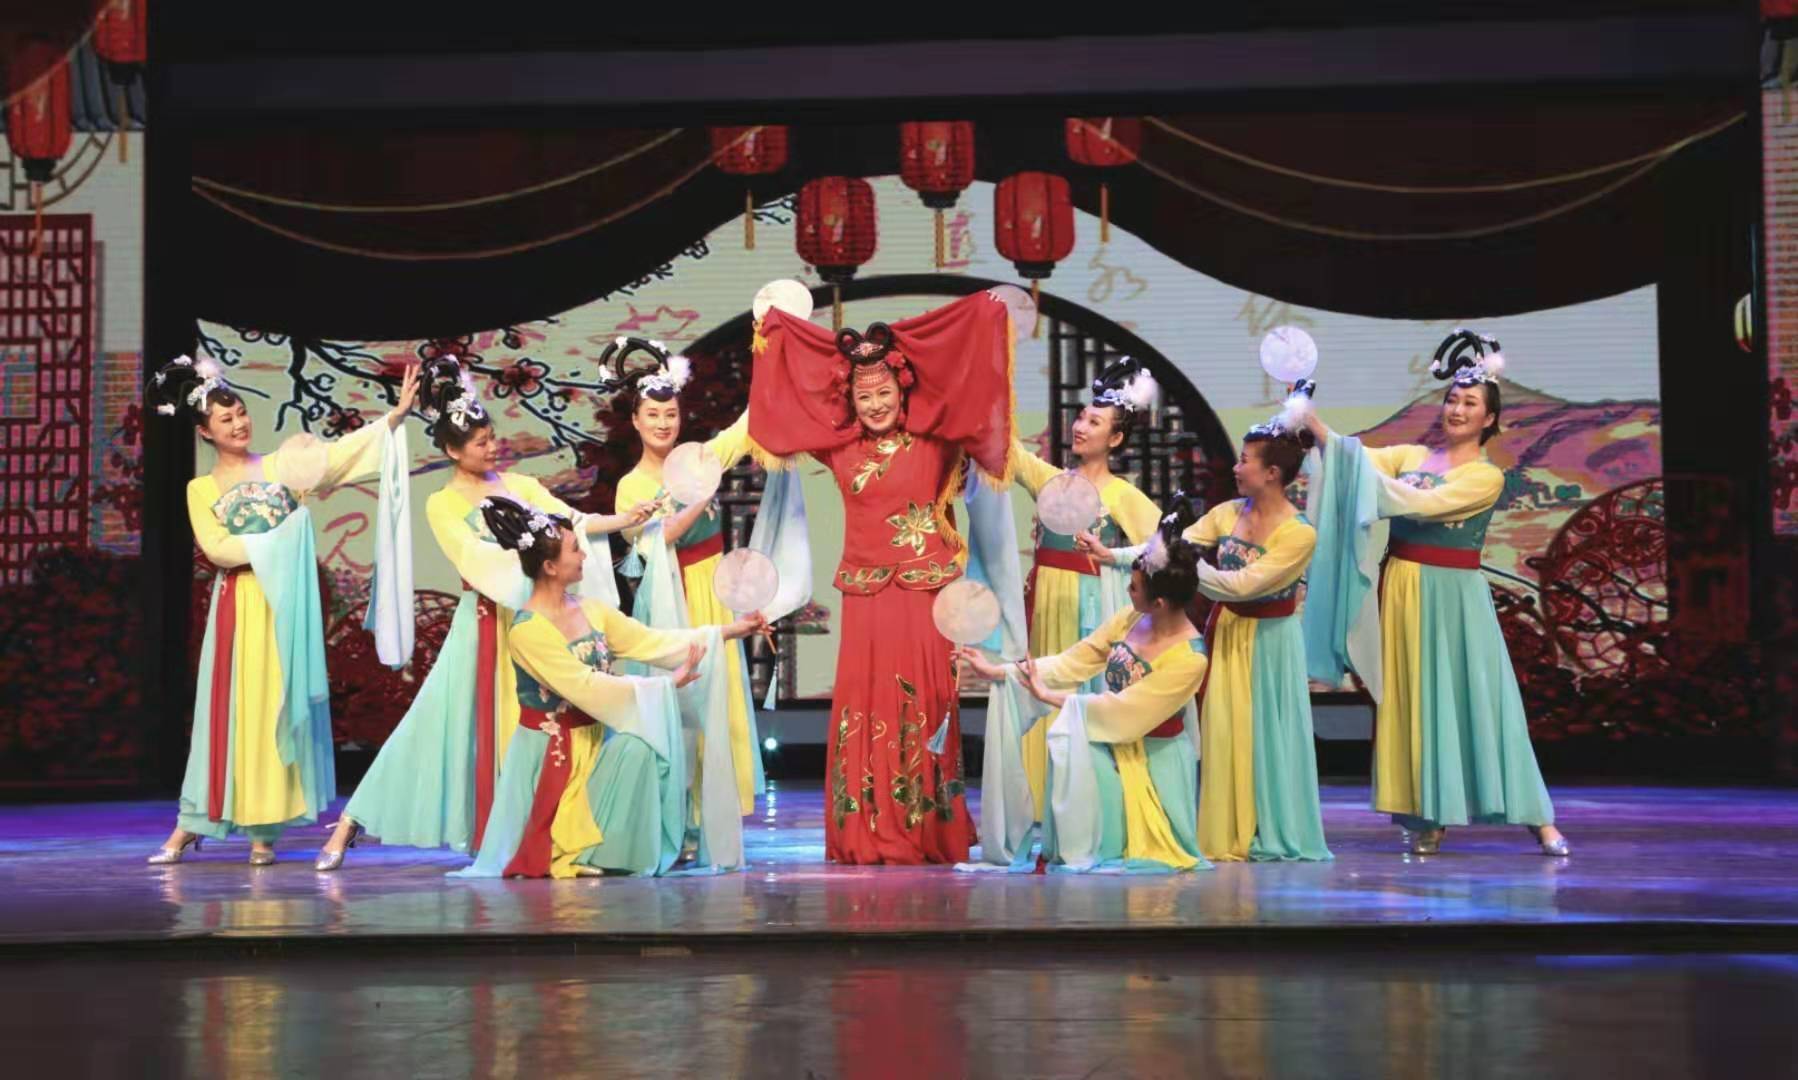 Феерическое выступление артистических дуэтов в фольклорном жанре в специальном показе на 17-м культурно-туристическом на фестивале Джомолунгма в тибетском городе Шигацзе